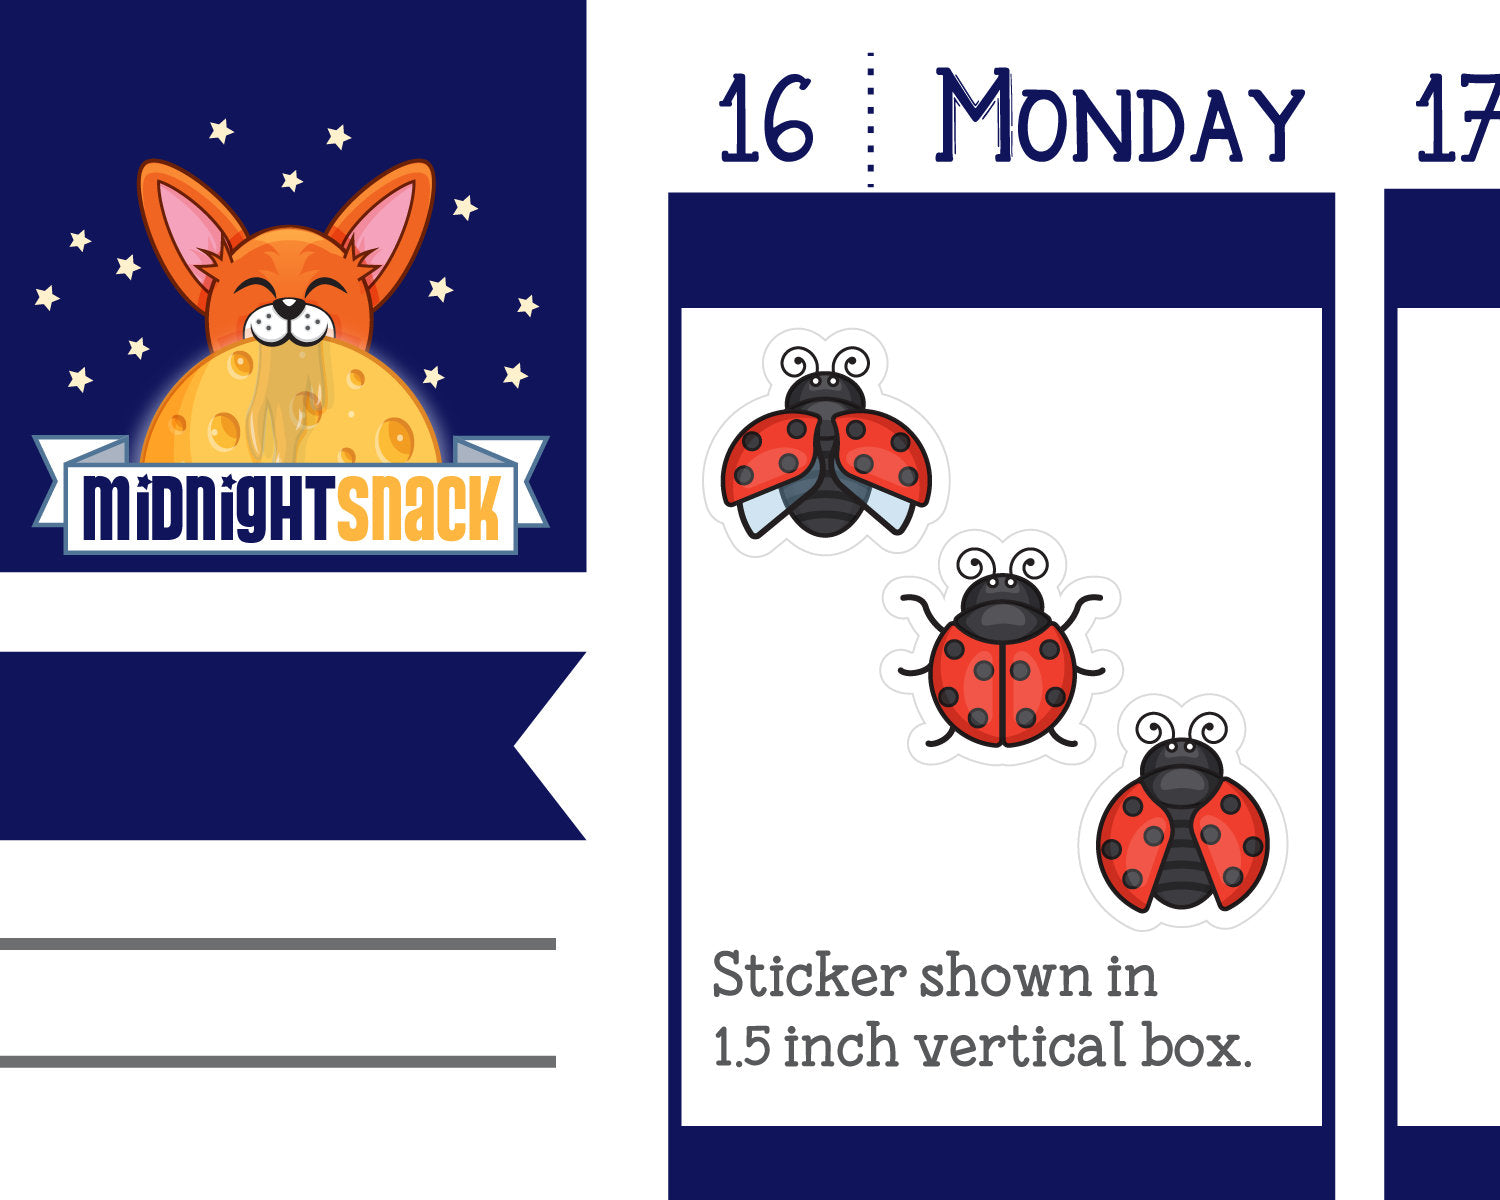 Ladybug Icon: Spring Garden Planner Sticker Midnight Snack Planner